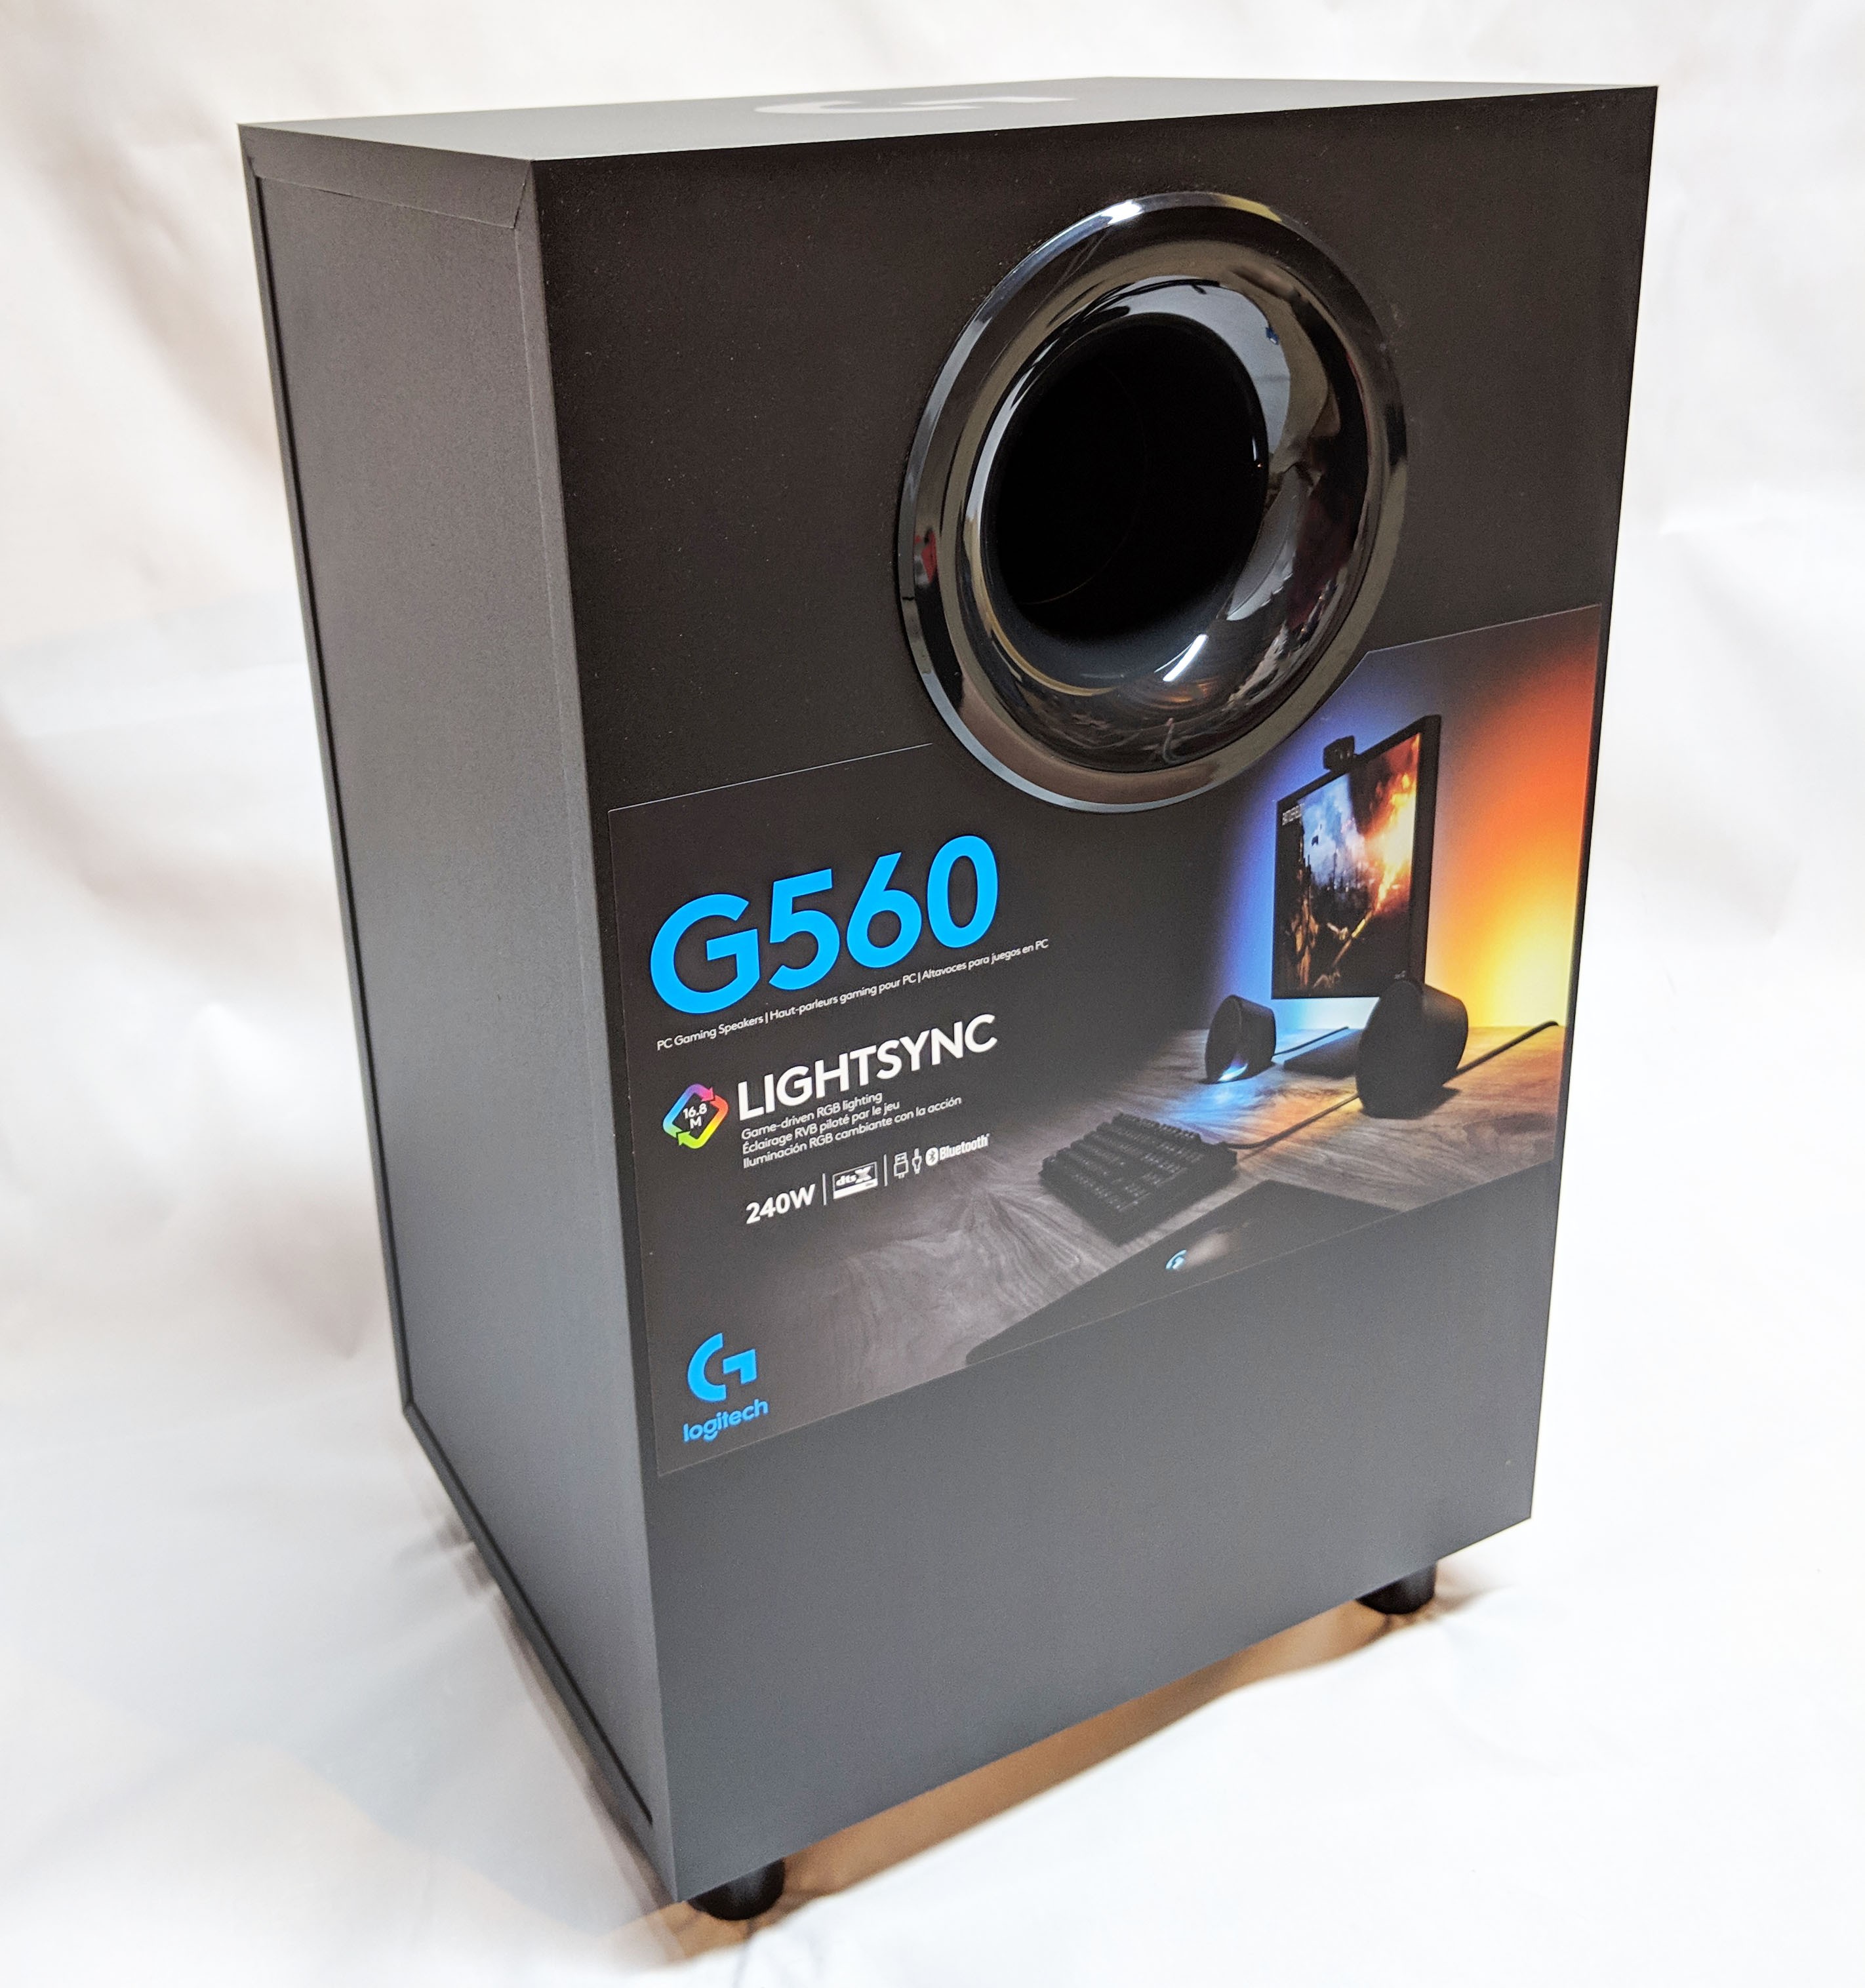 Logitech G560 Lightsync Speakers Unboxing 